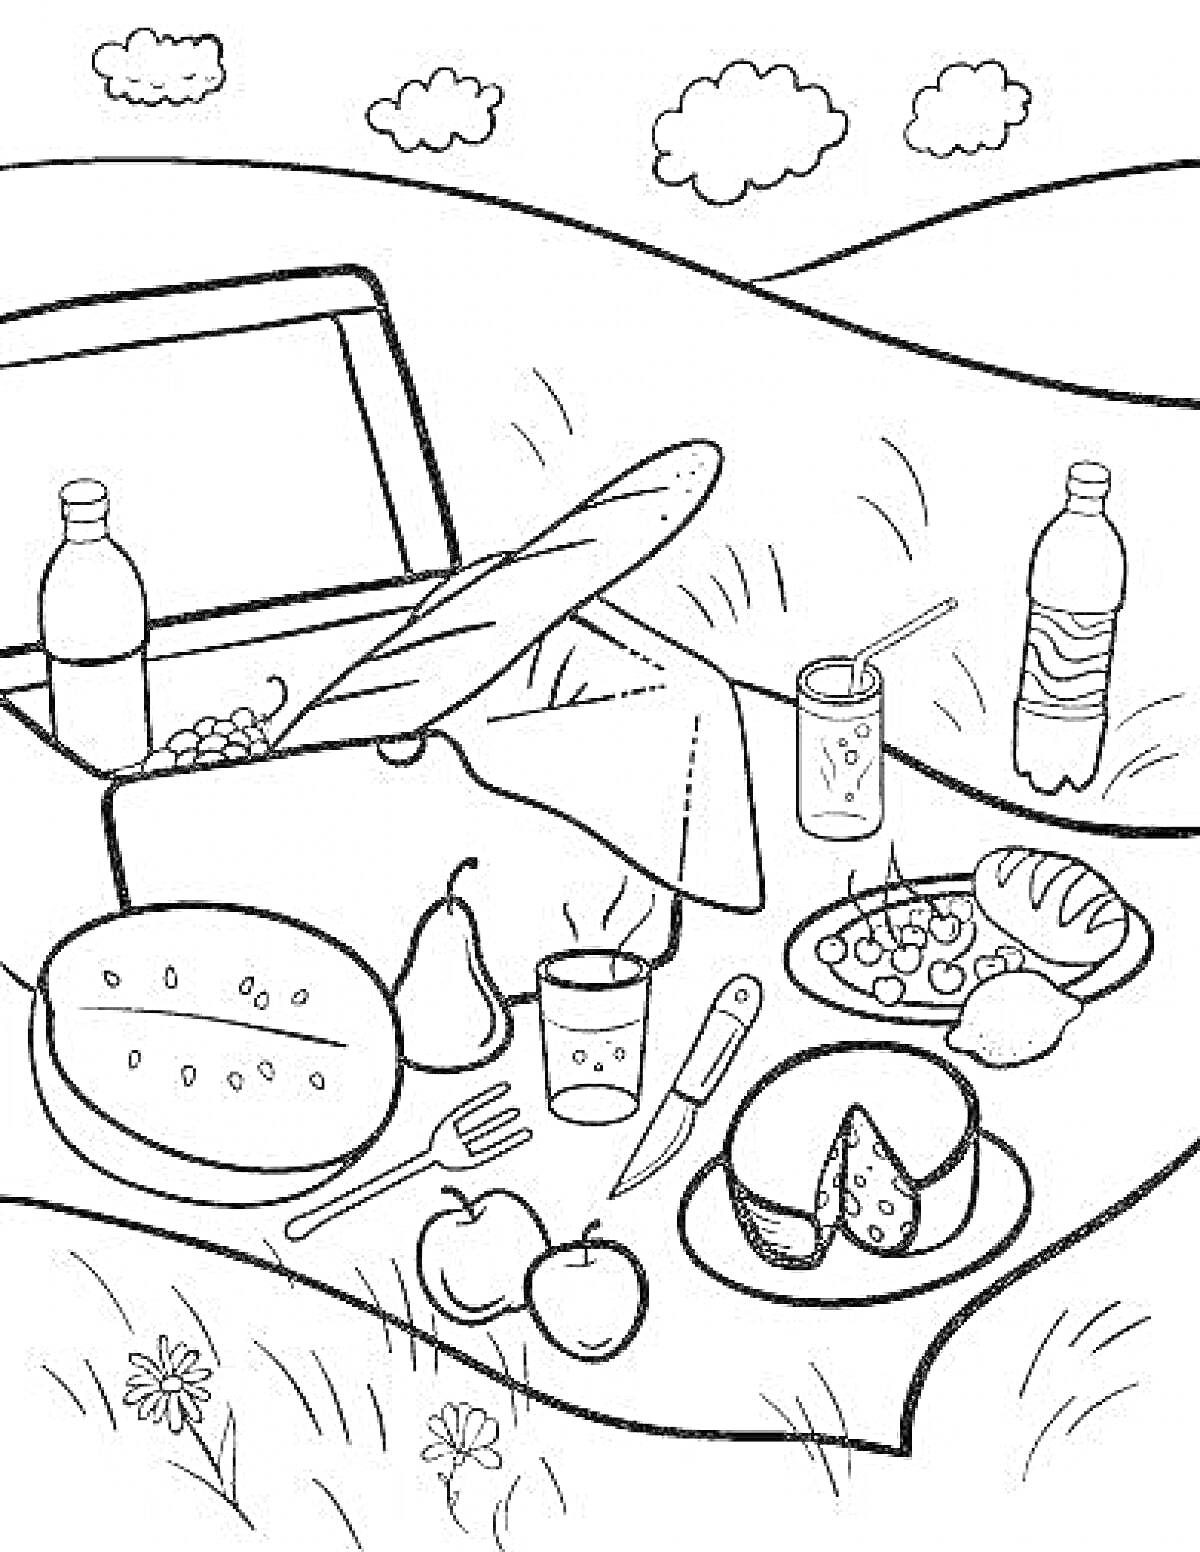 РаскраскаПикник с корзиной для пикника, бутылками, багетом, виноградом, арбузом, грушей, стаканом, ножом, яблоками, тарелкой с сыром и хлебом, салатом и лимоном.